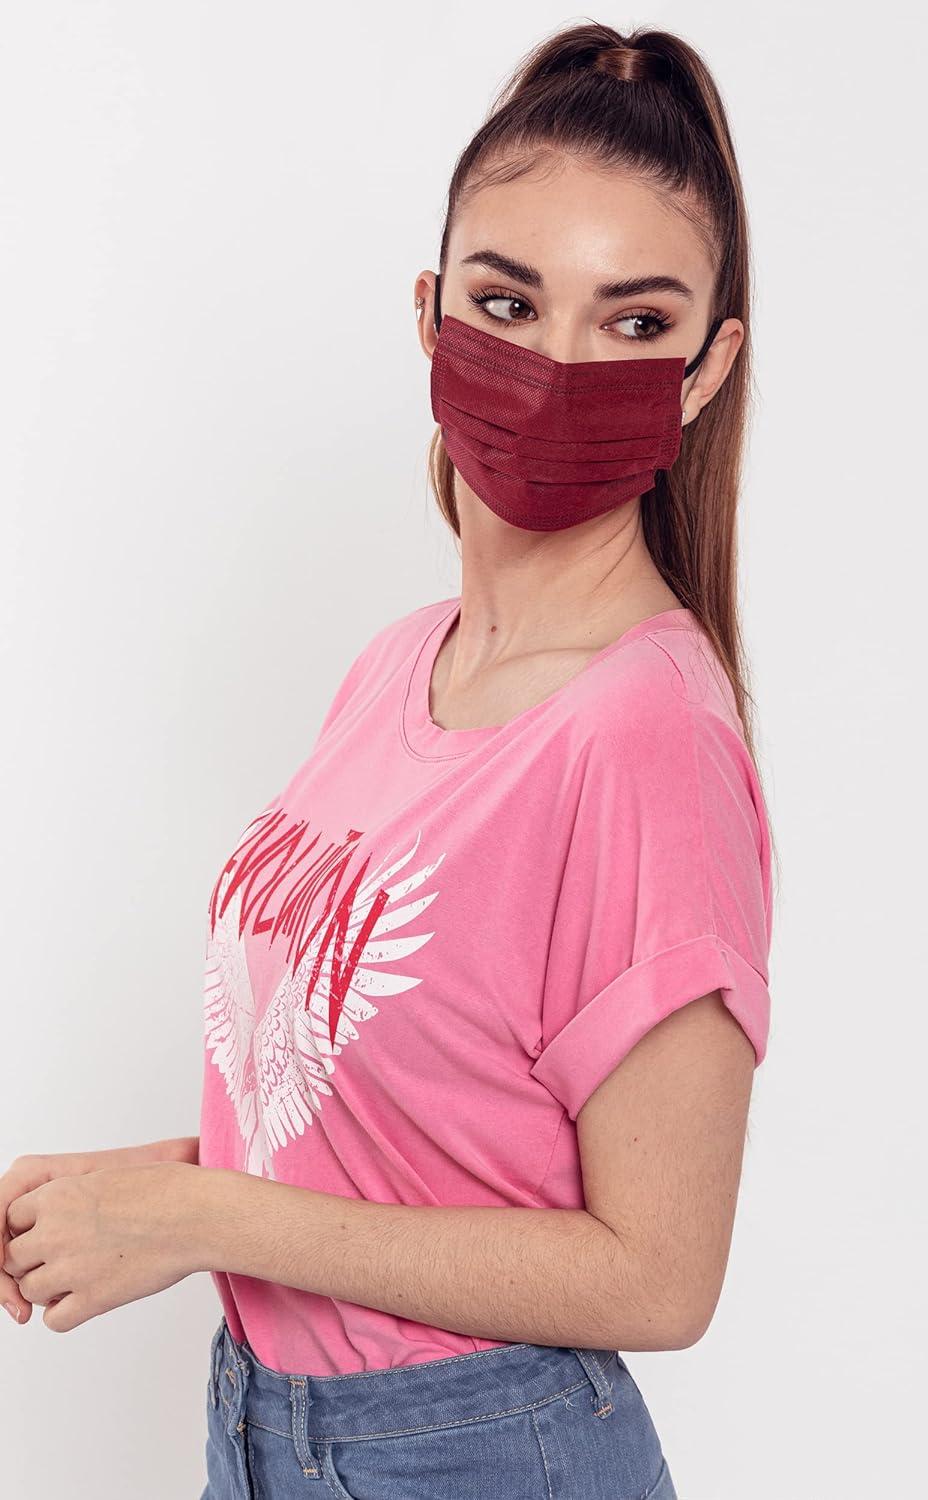 Masque protection visage à usage unique 3 plis 50 pièces 1x50 pc(s) -  Redcare Apotheke